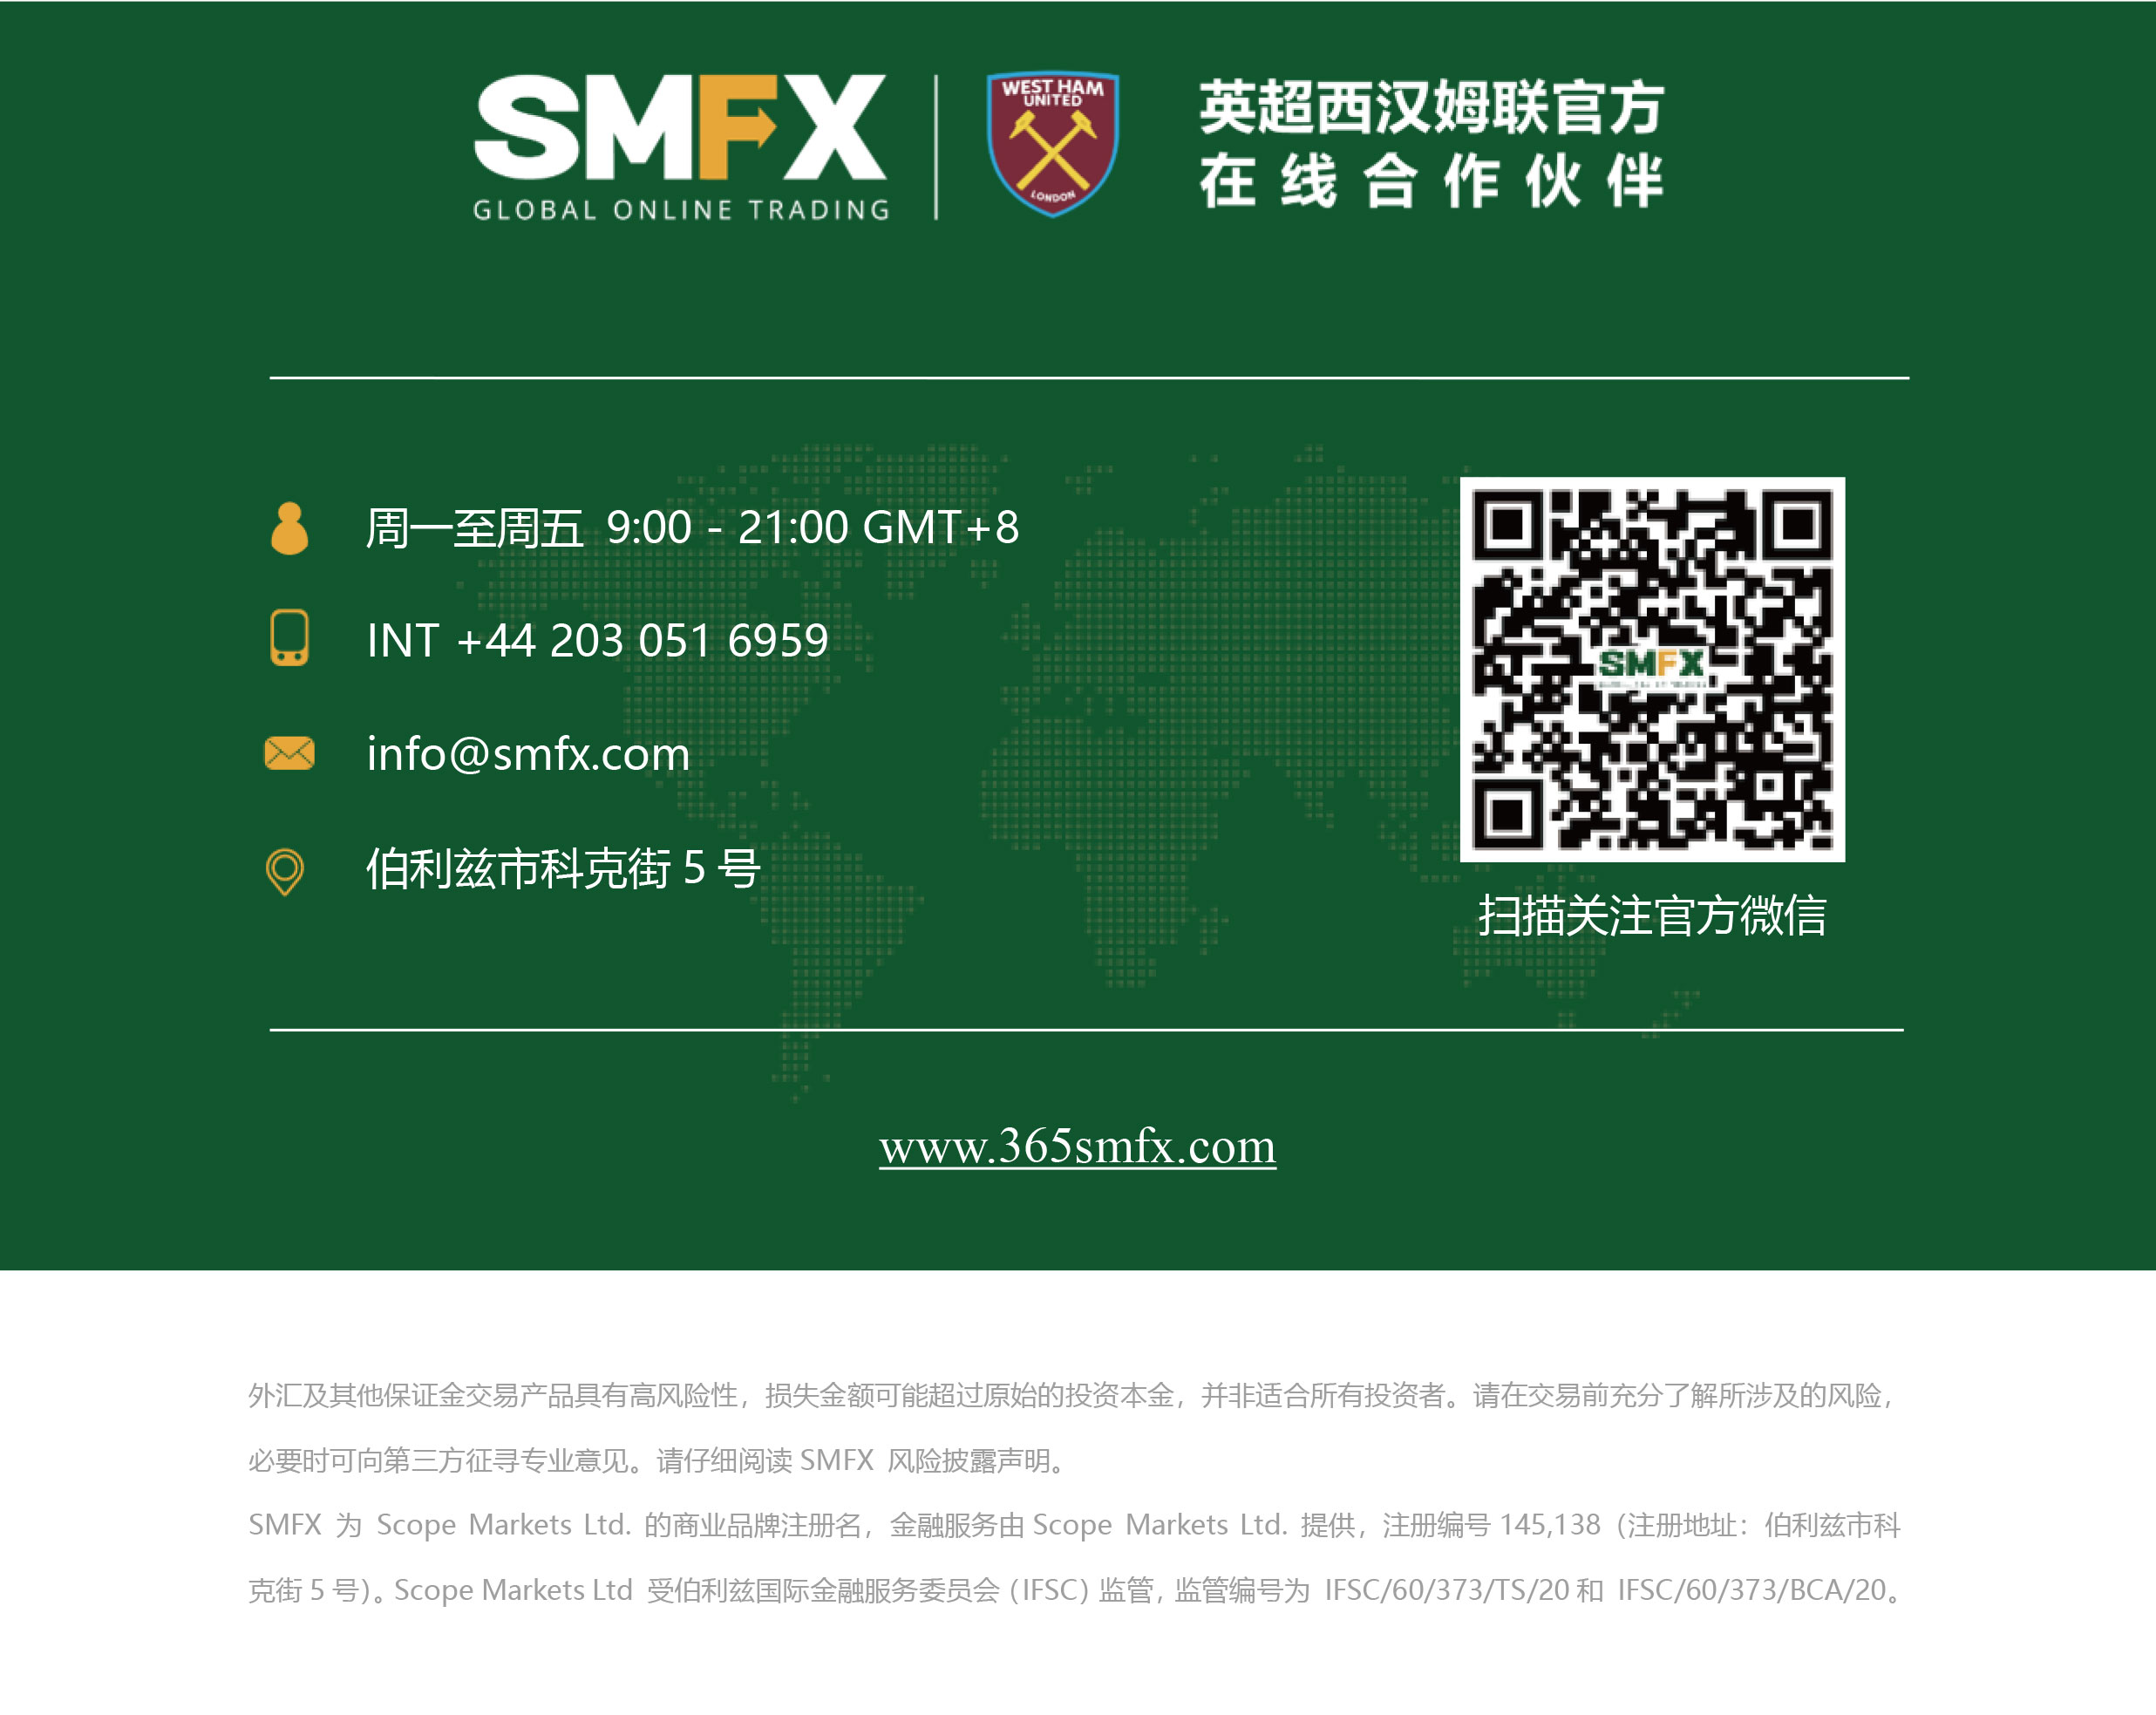 SMFX-模板尾部公司信息-带官网.jpg